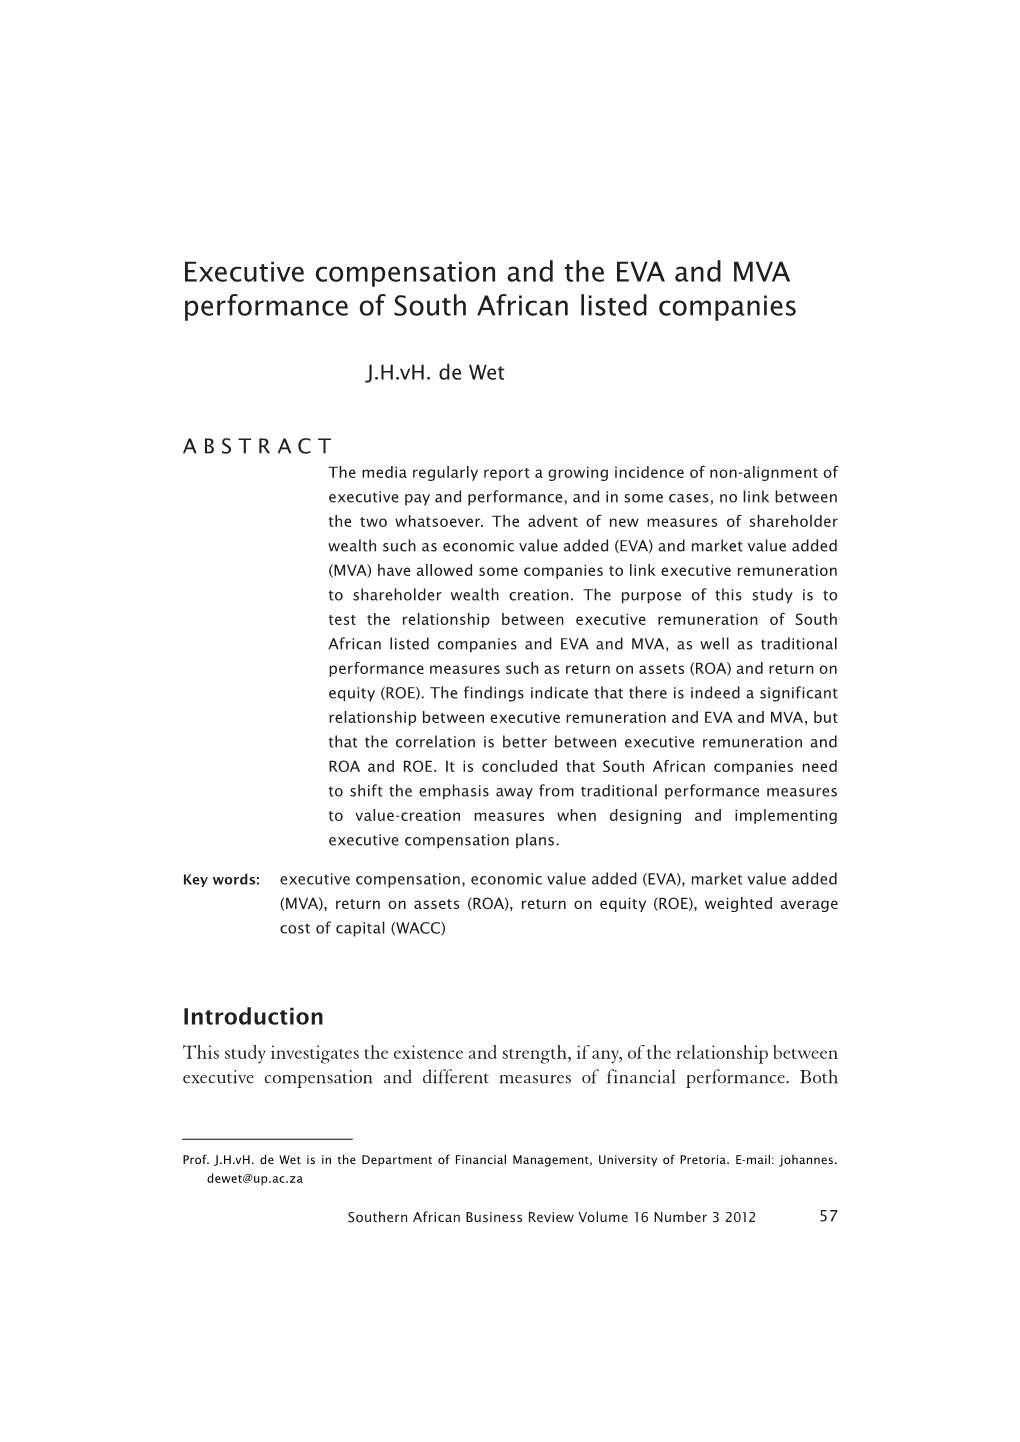 Executive Compensation and EVA and MVA Performance of SA Listed Companies